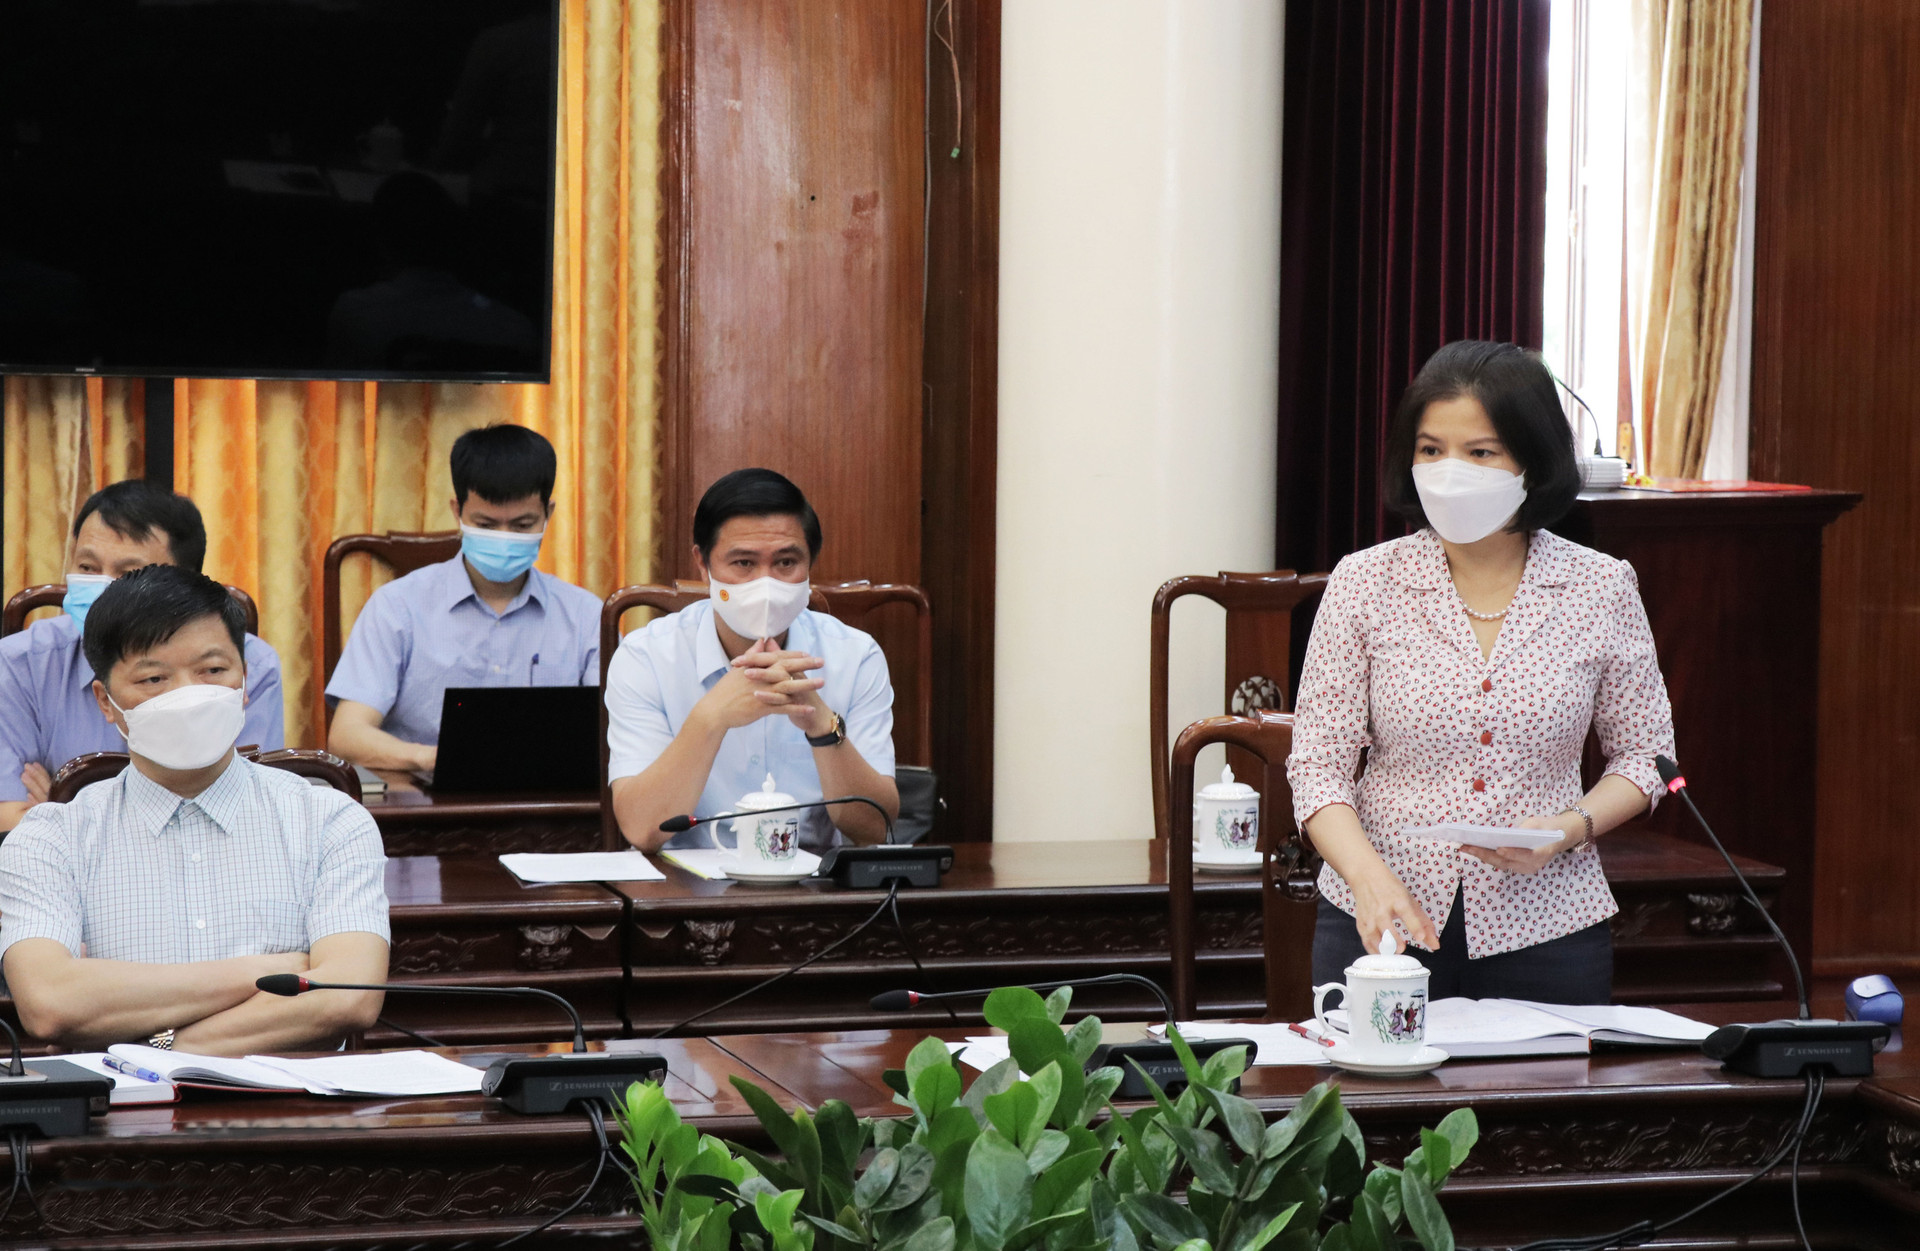 Bắc Ninh:Tổ chức Hội nghị mở rộng bàn giải pháp phòng chống dịch covid-19 - Ảnh 2.